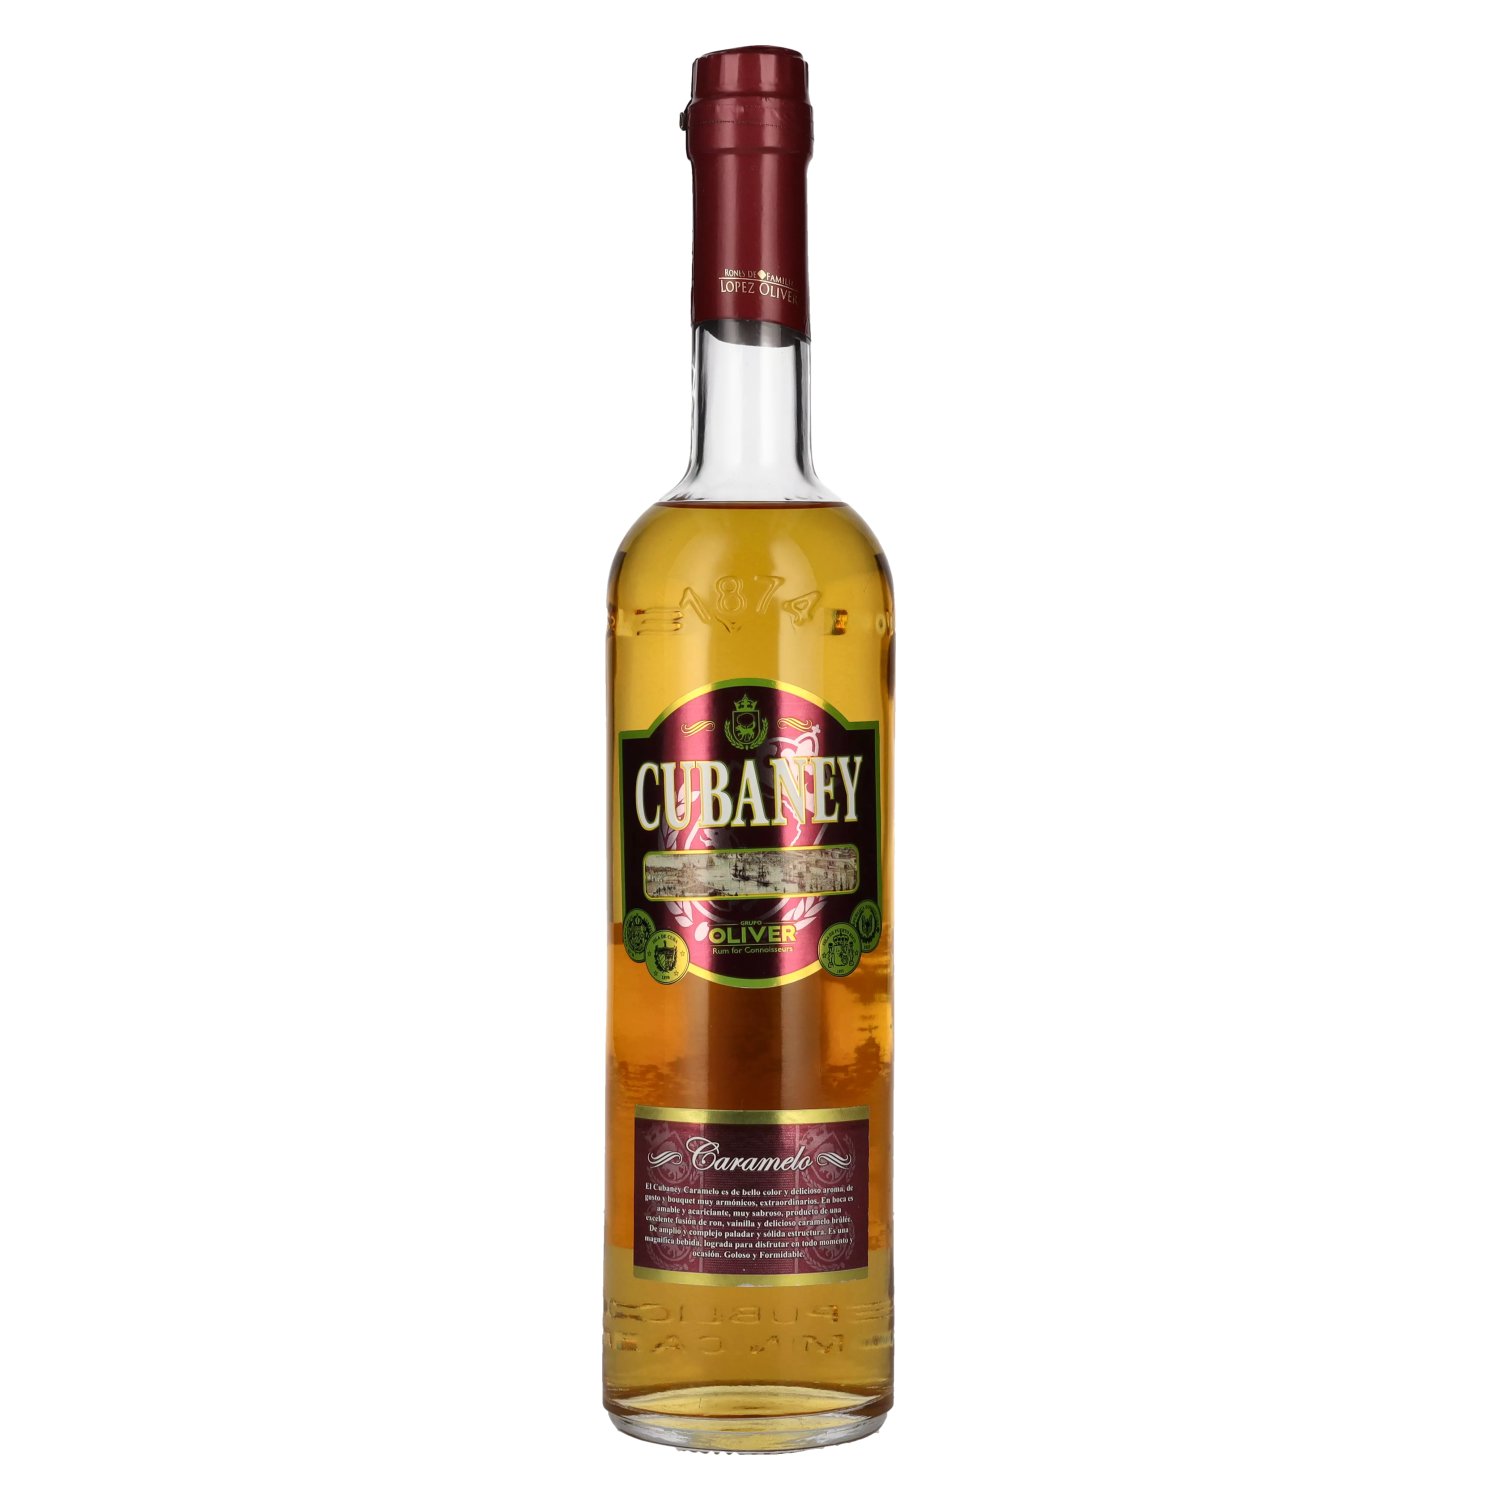 Cubaney Caramelo Spirit Drink 30% delicando - 0,7l Vol